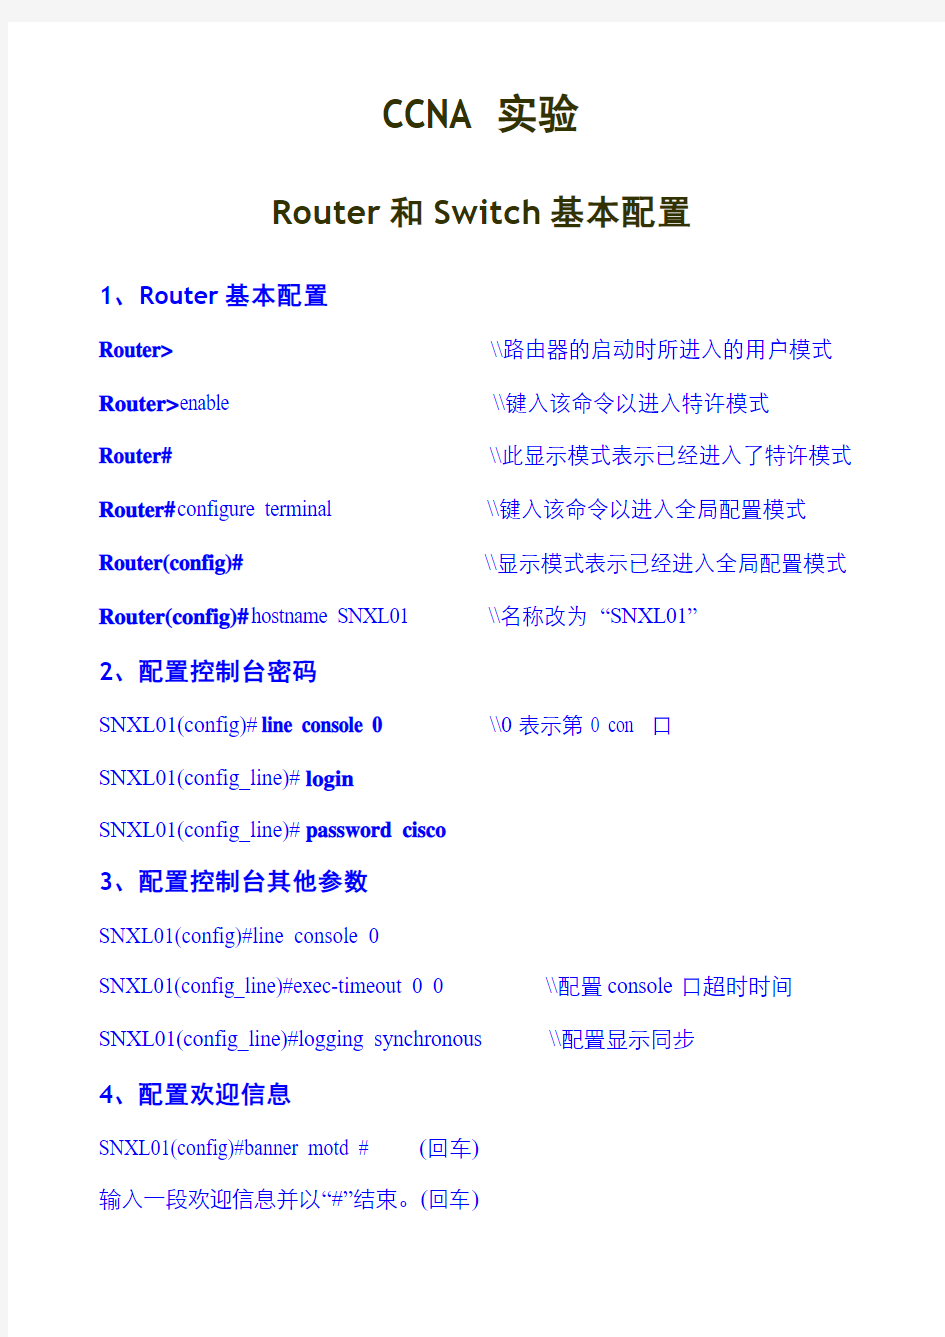 CCNA实验：Router和Switch基本配置(供参考)